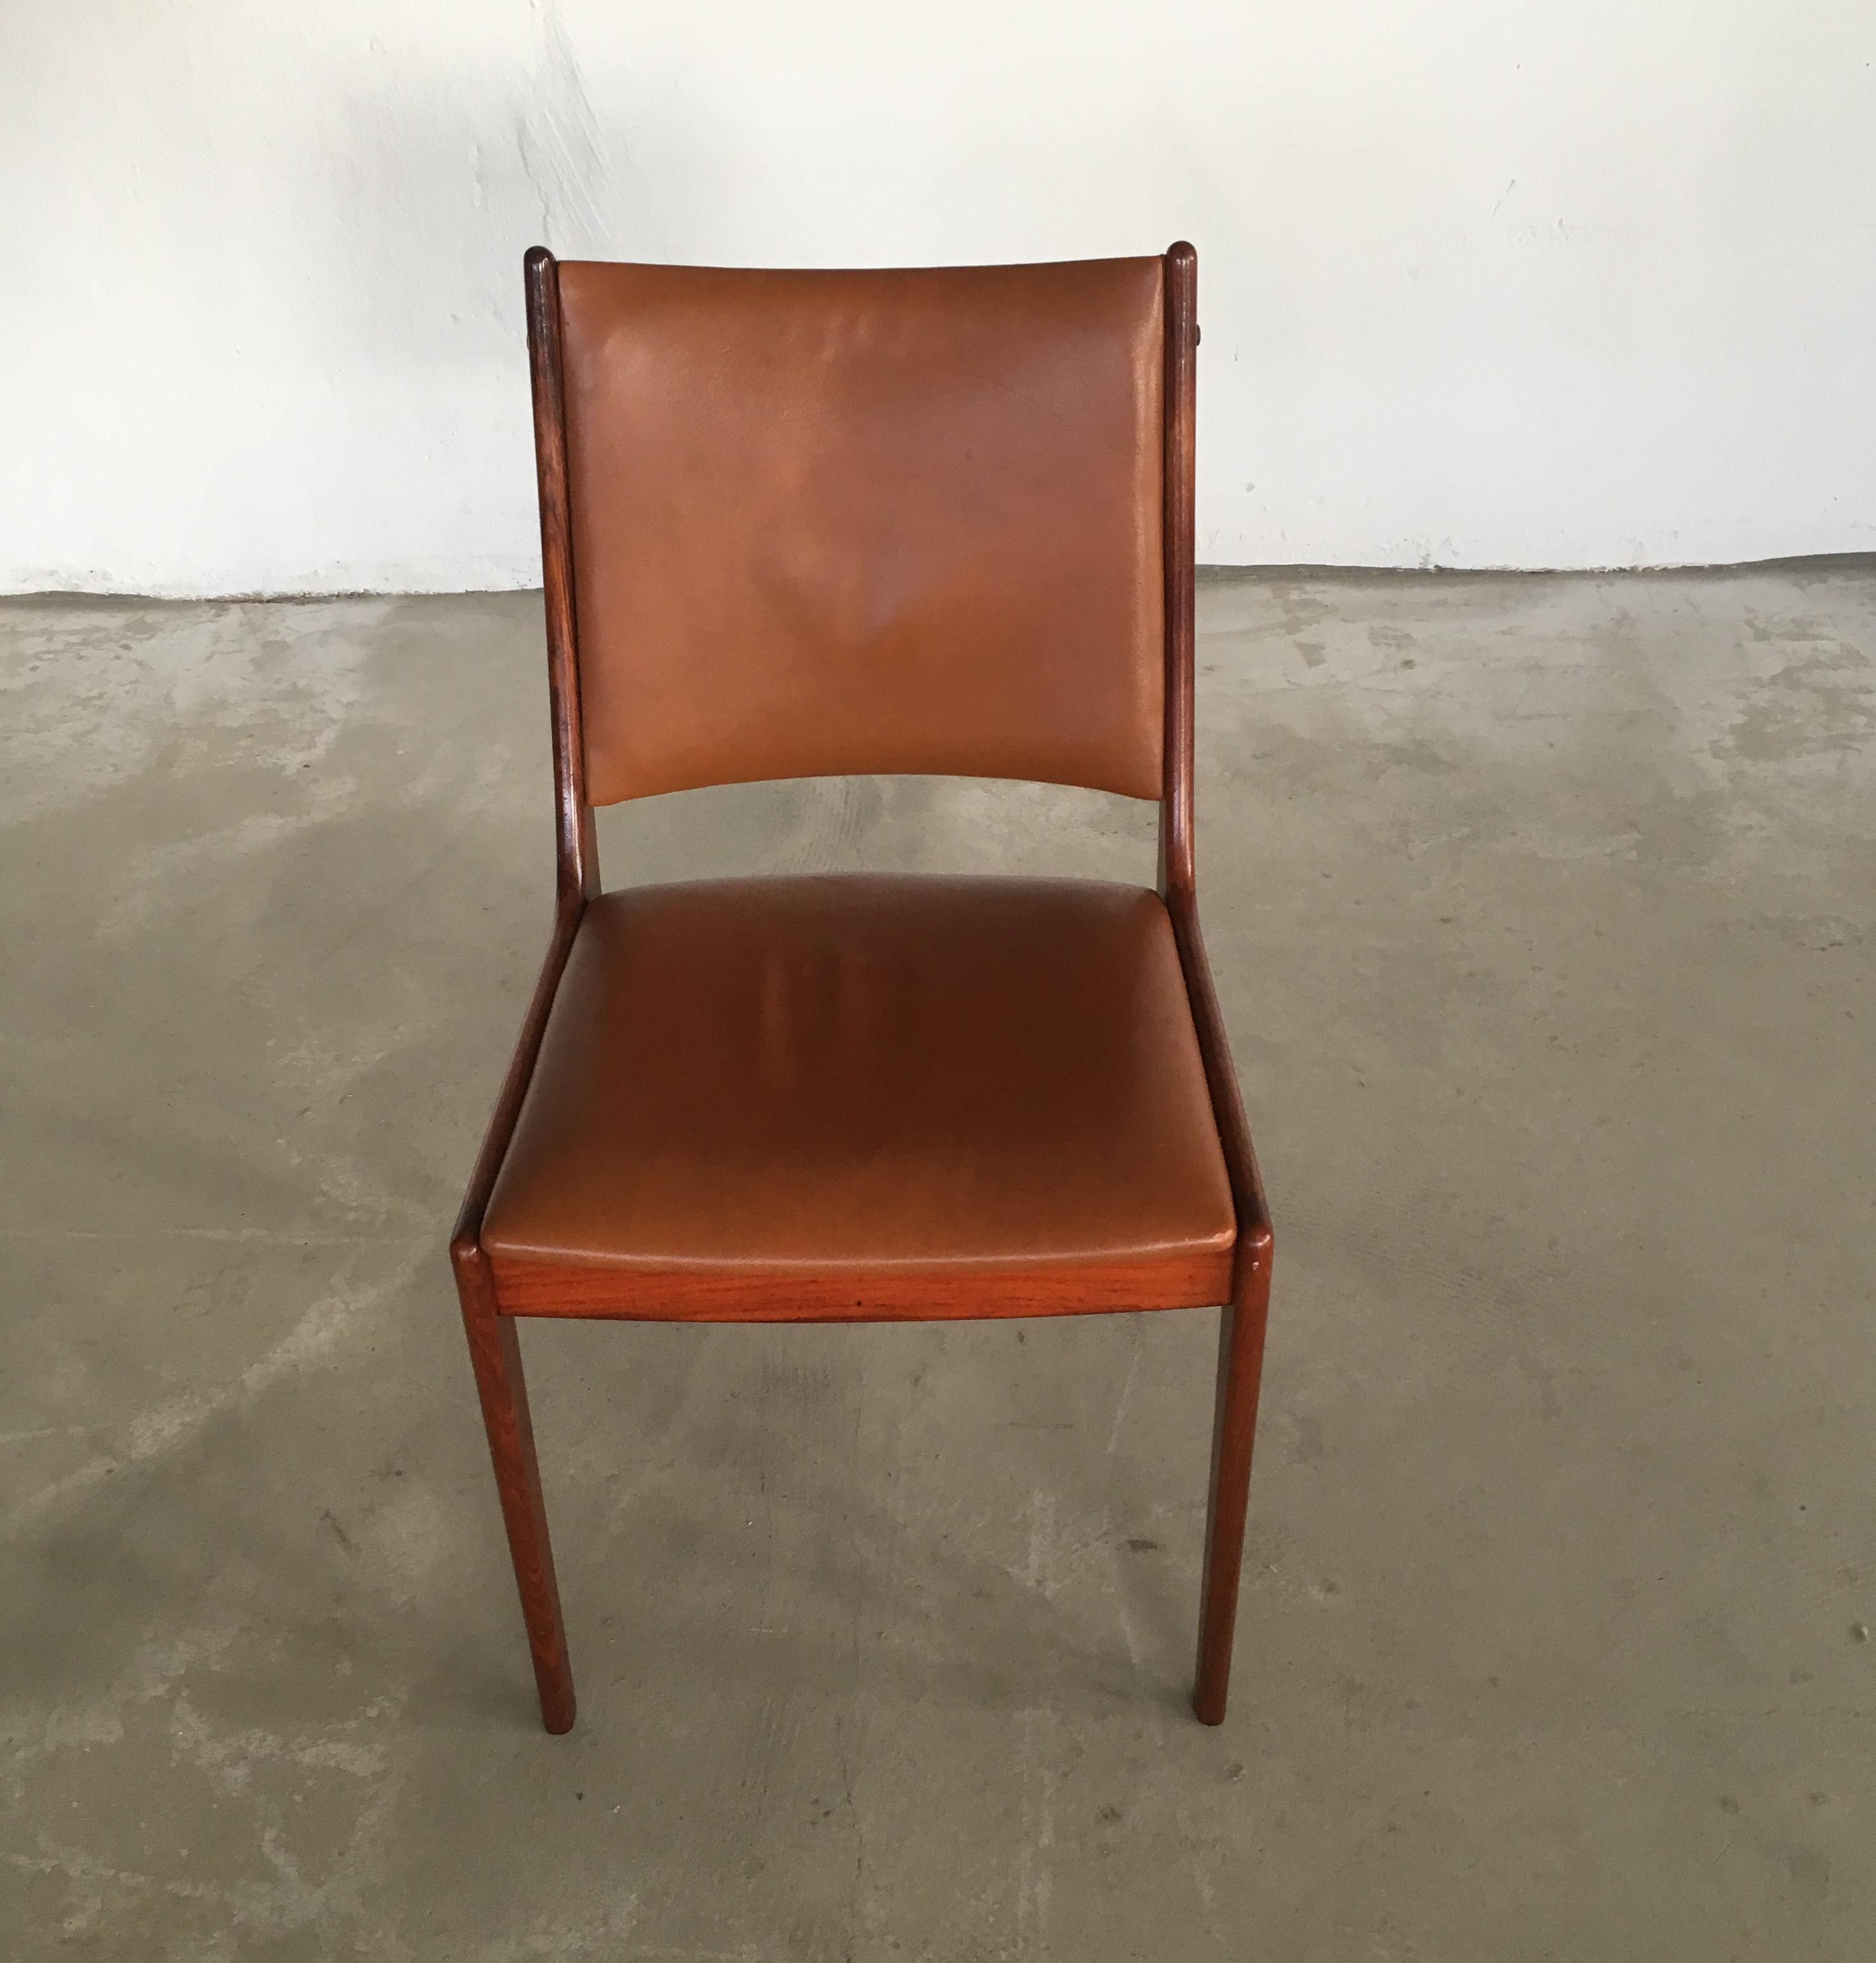 Ensemble de six chaises de salle à manger Johannes Andersen des années 1960 en bois de rose, fabriquées par Uldum Møbler, Danemark, y compris un rembourrage personnalisé.

L'ensemble de chaises de salle à manger présente un design épuré, simple et